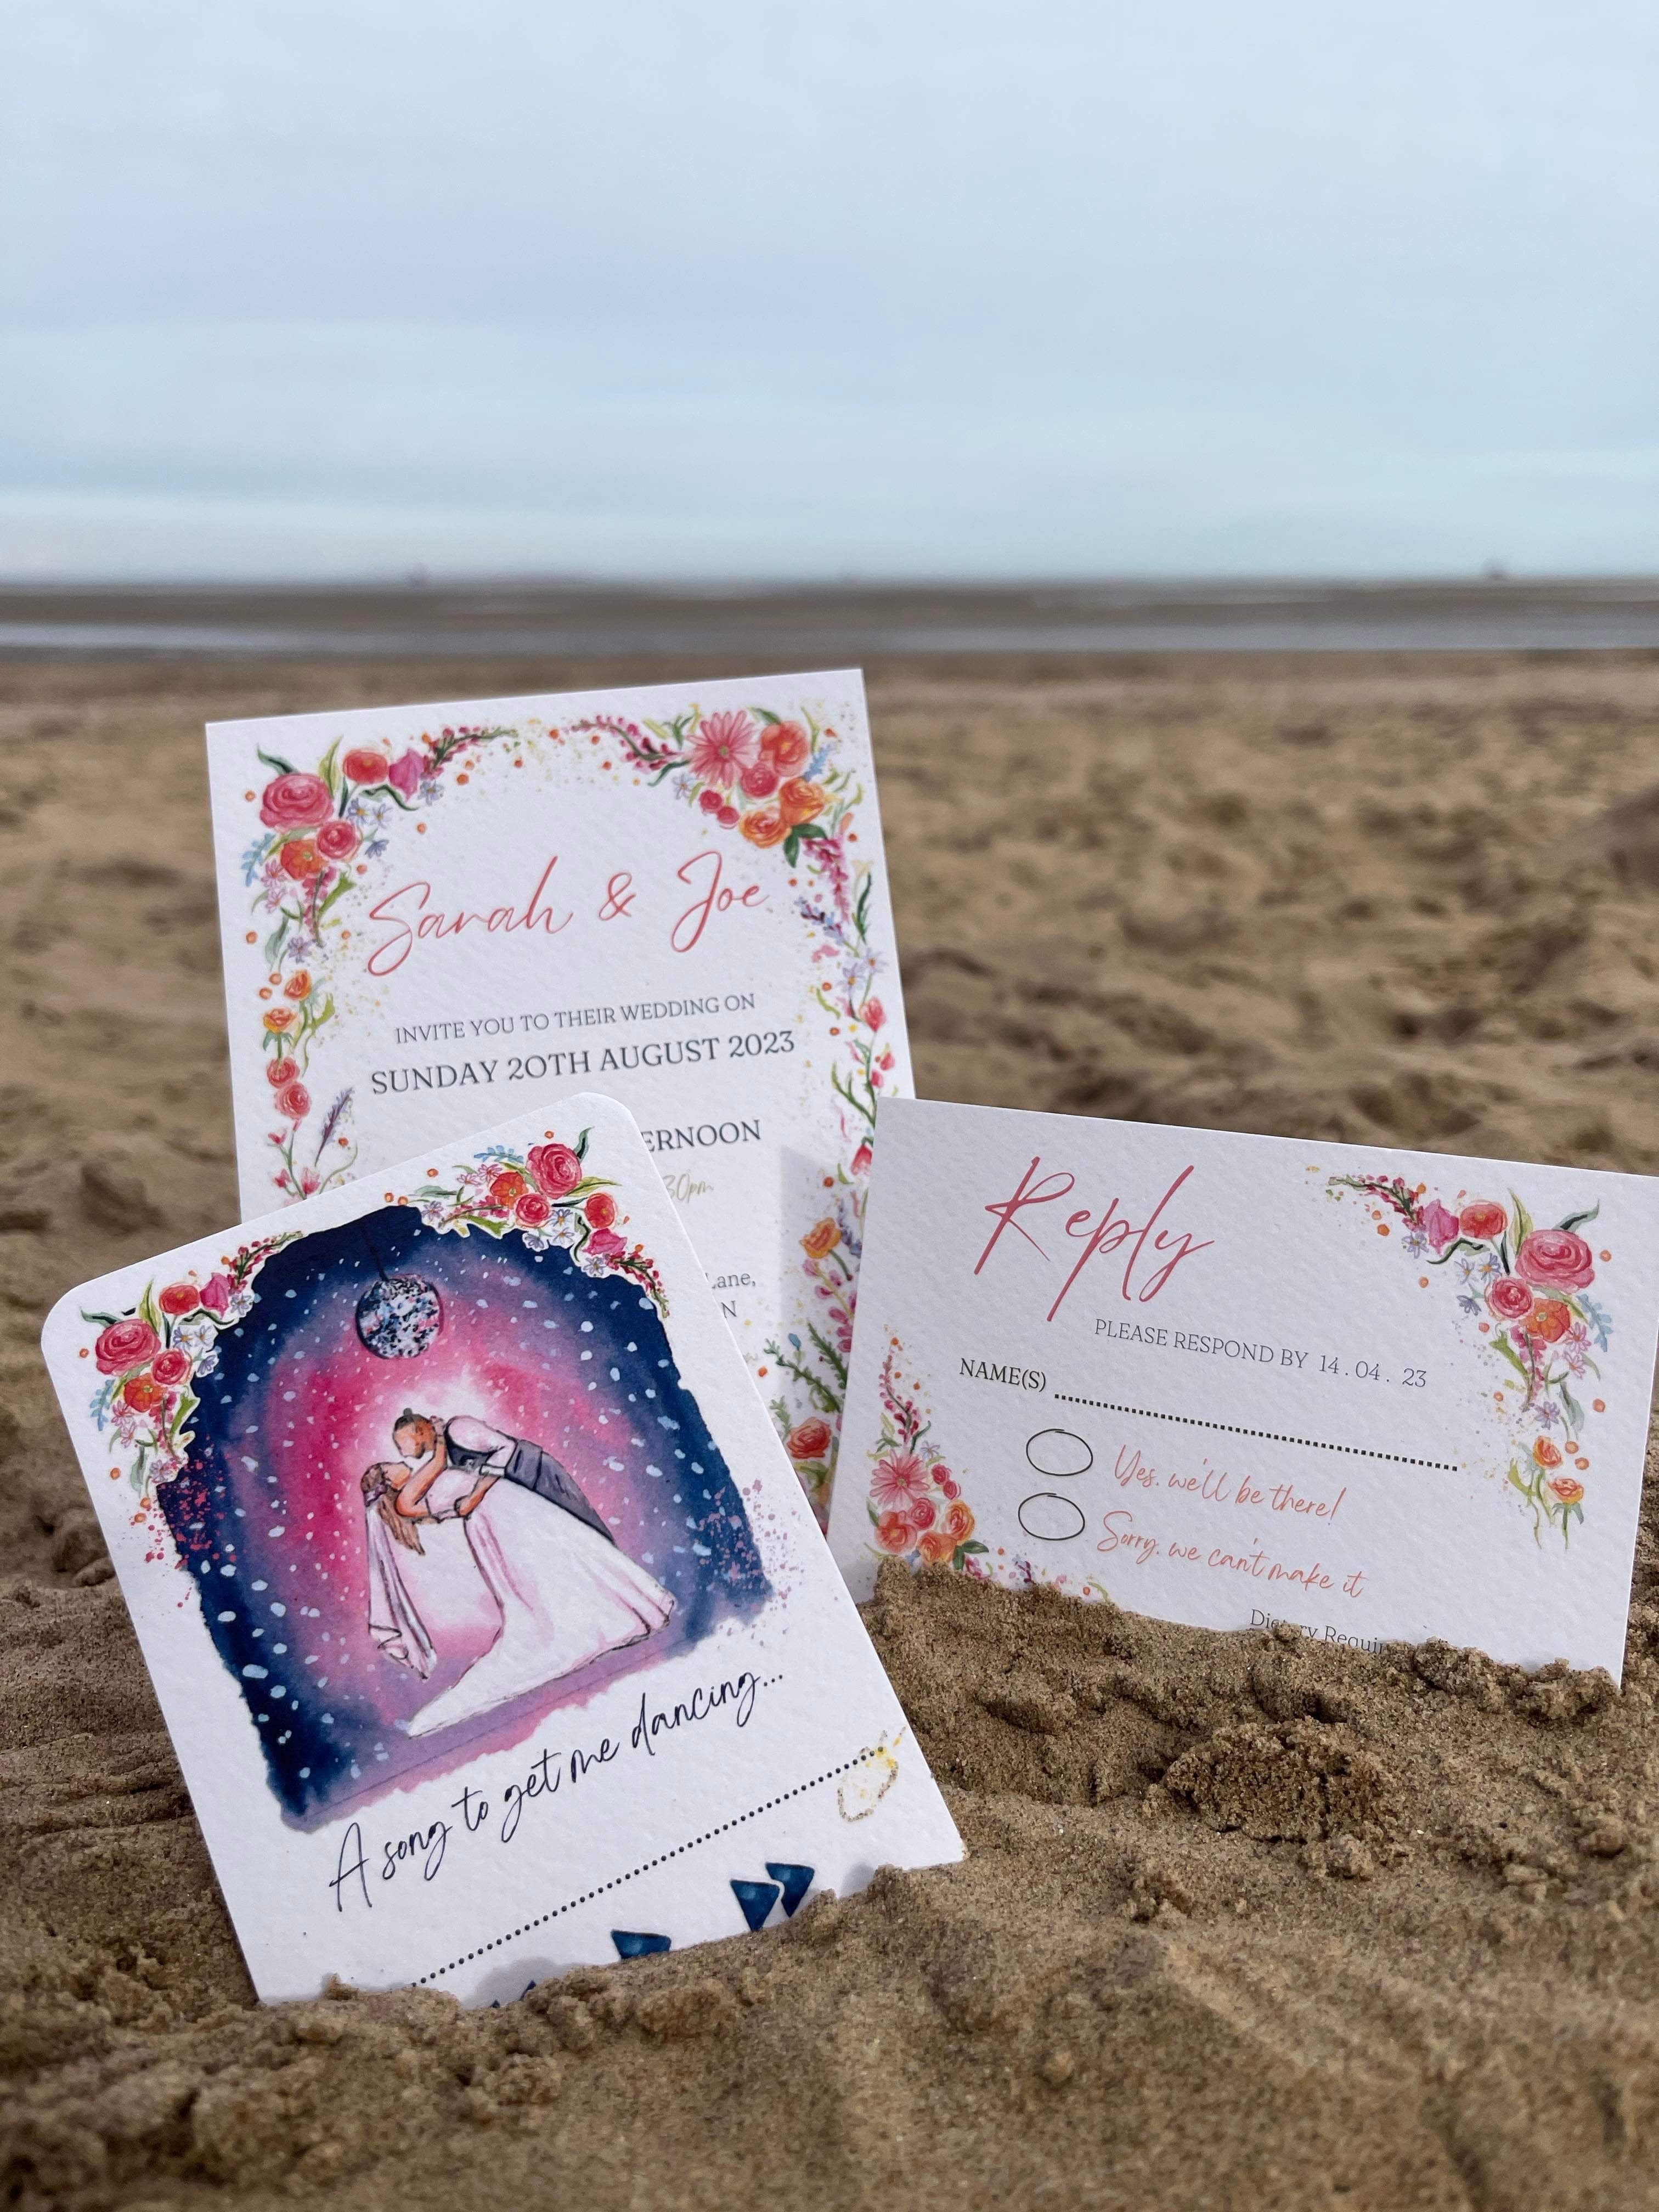 Bespoke luxury wedding invitations on Cleethorpes beach designed by Eve Leoni Art.